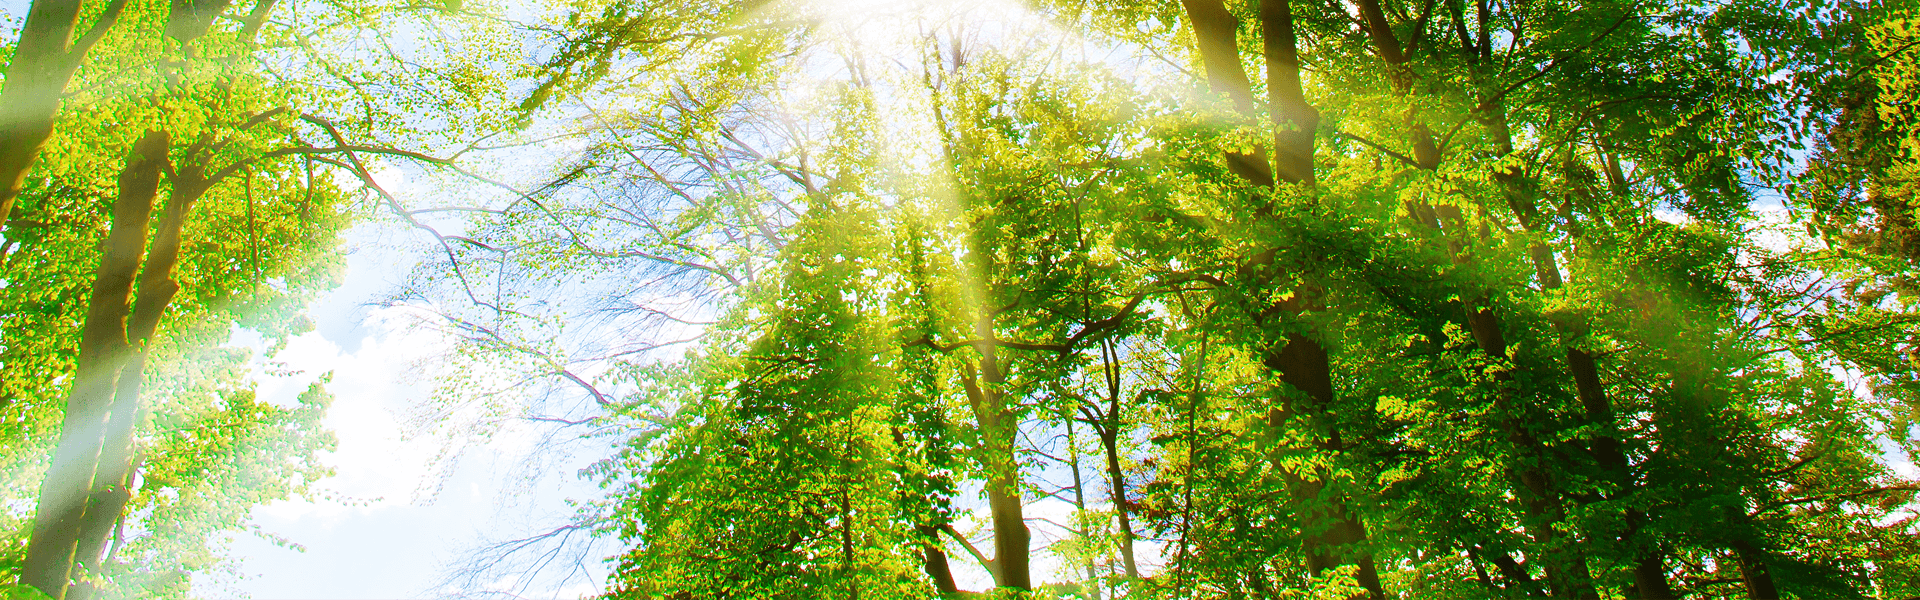 Sunburst Coming Through Trees